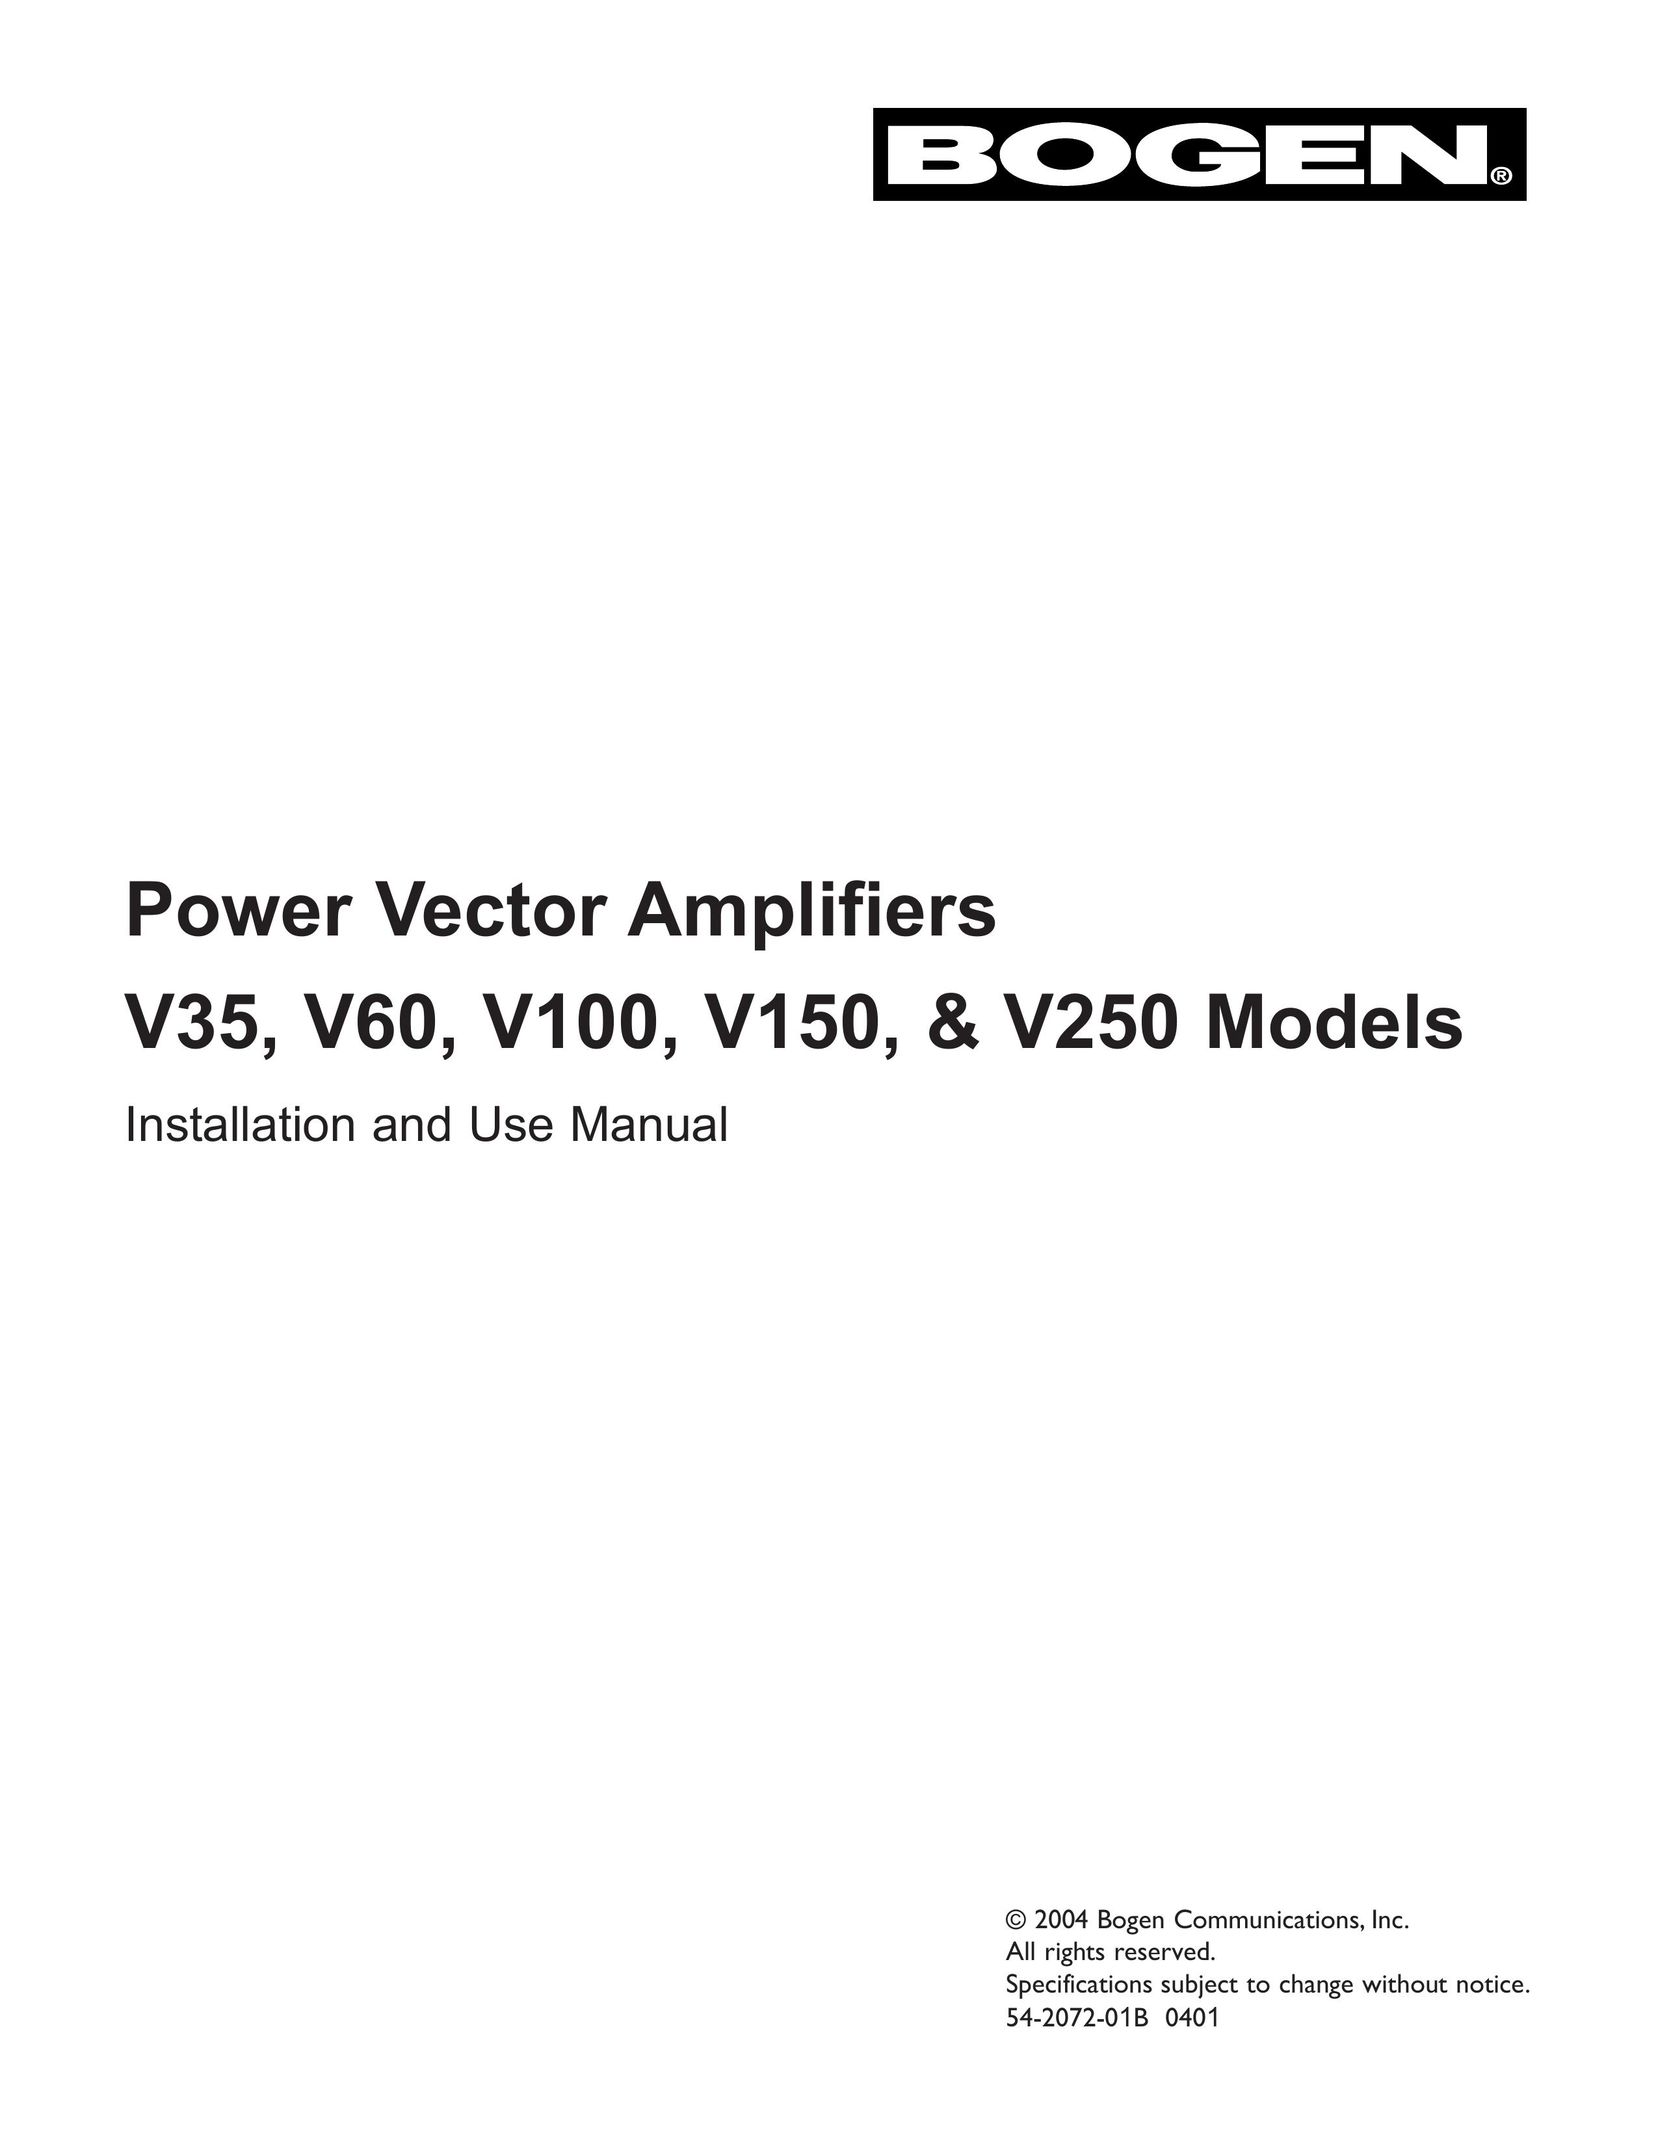 Bogen V150 Stereo Amplifier User Manual